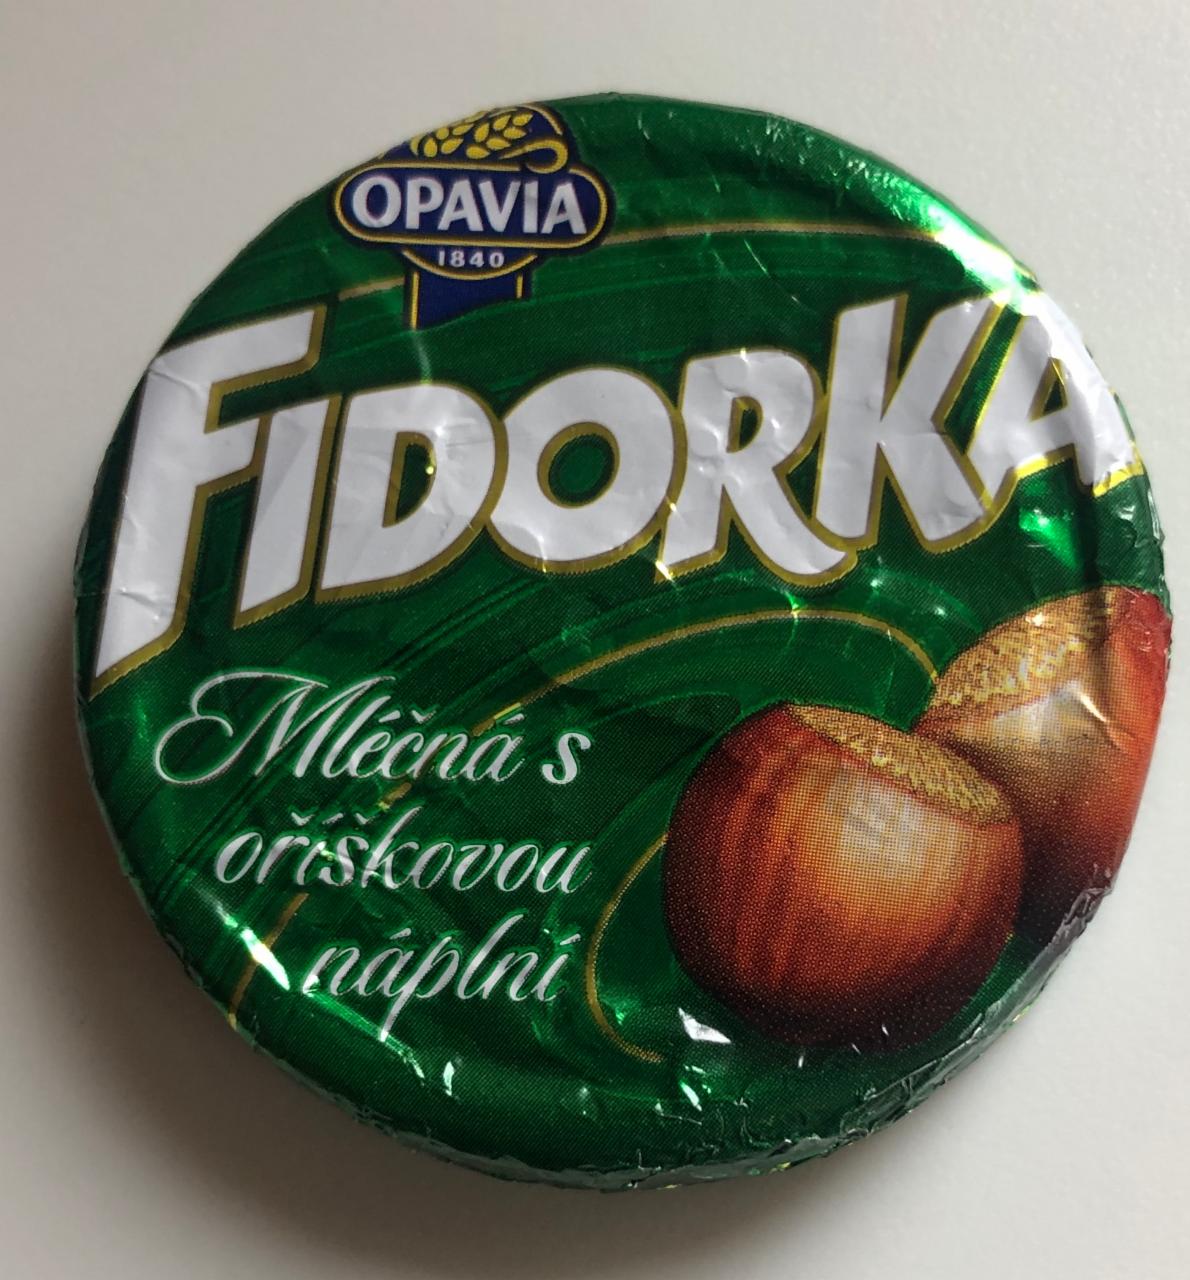 Фото - Вафлі з горіховою начинкою в молочному шоколаді Fidorka Opavia